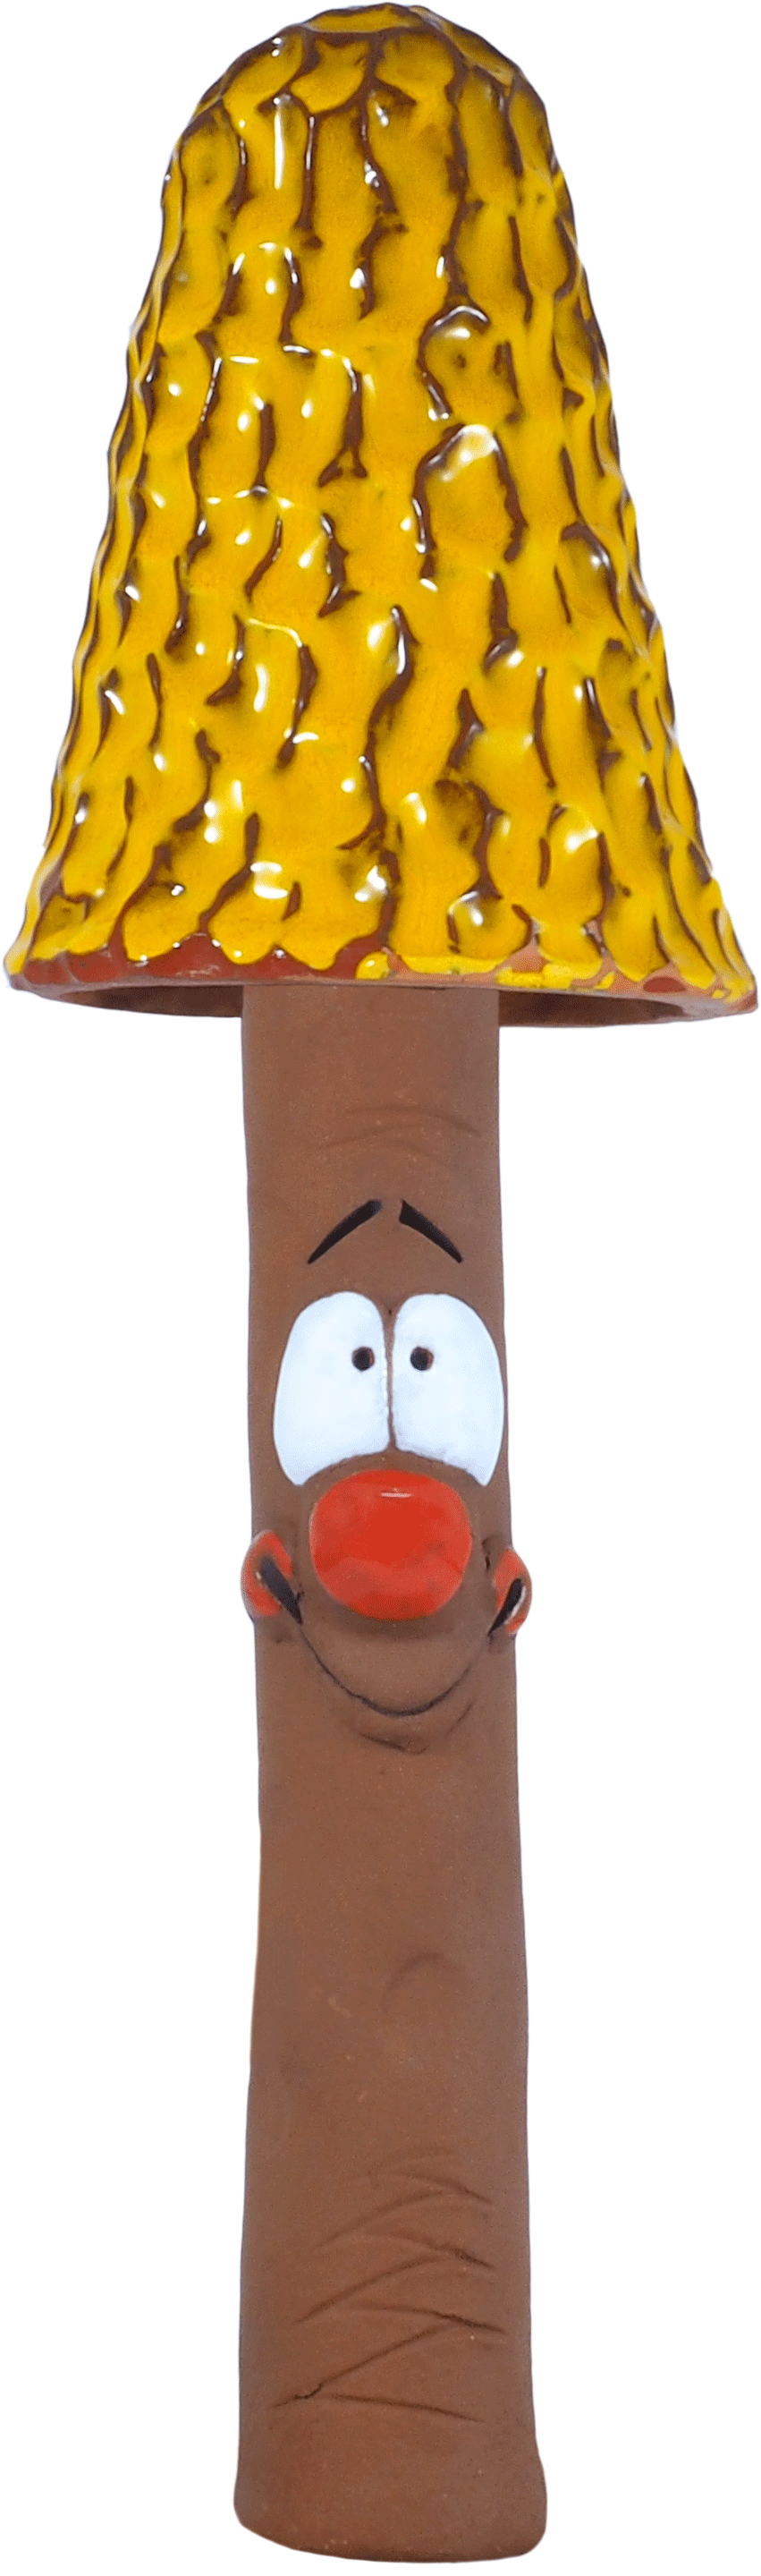 Pilz  - auf Stab aufsteckbar - in 3 Farben - frostfest - h 39cm